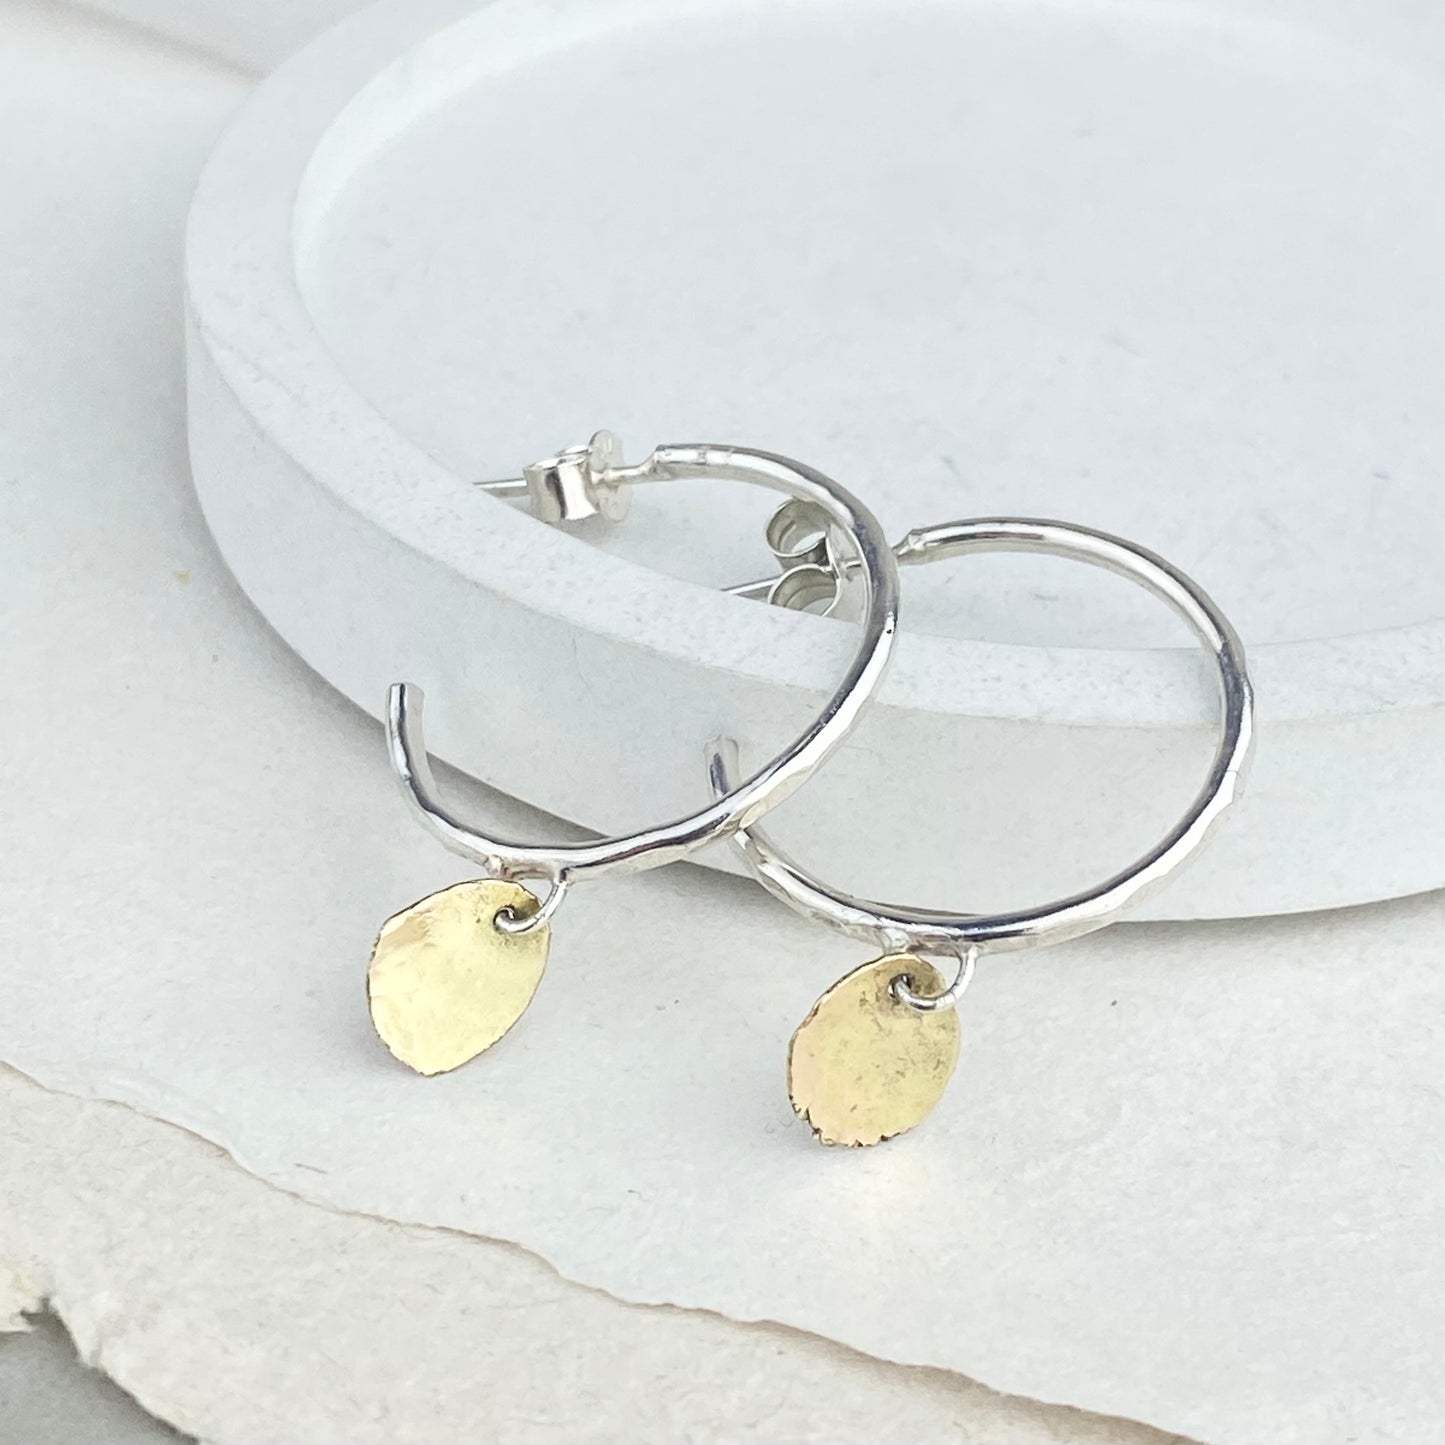 The Angel Hoop Earrings - sterling silver hoop earrings with 9ct gold accent - mixed metal earrings